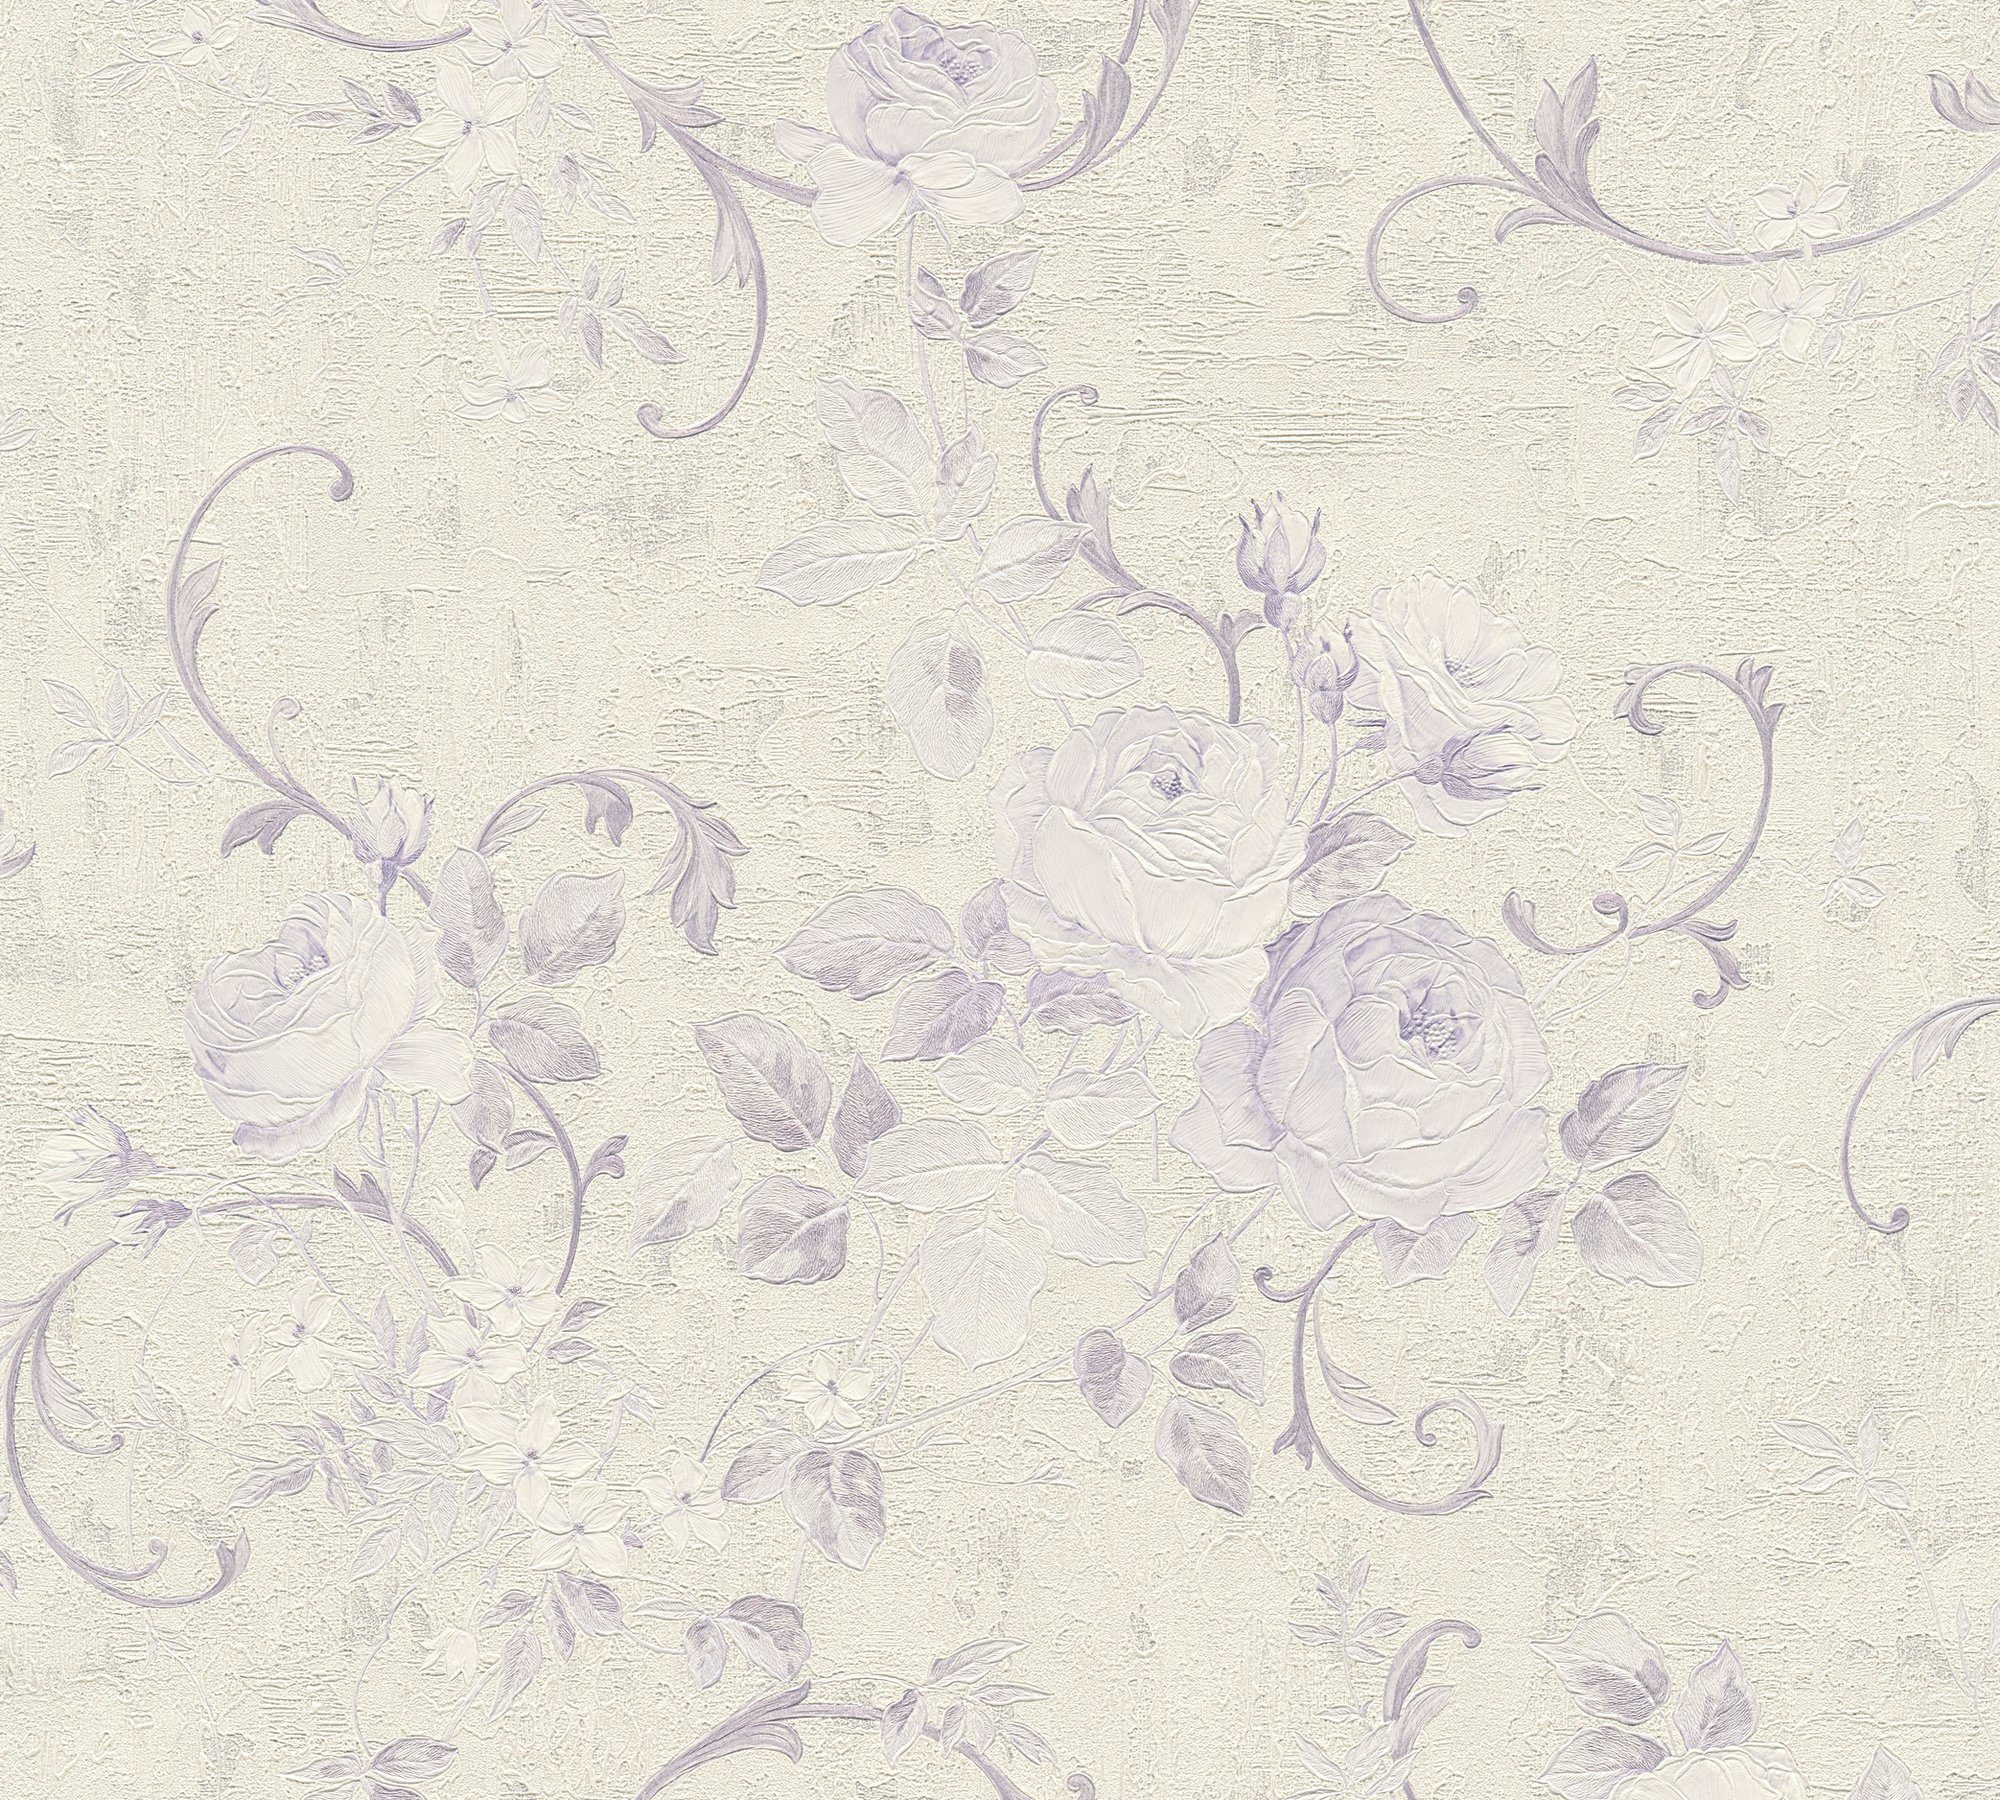 Création Blumen floral, Tapete Romantico floral, romantisch Vliestapete A.S. Barock creme/violett